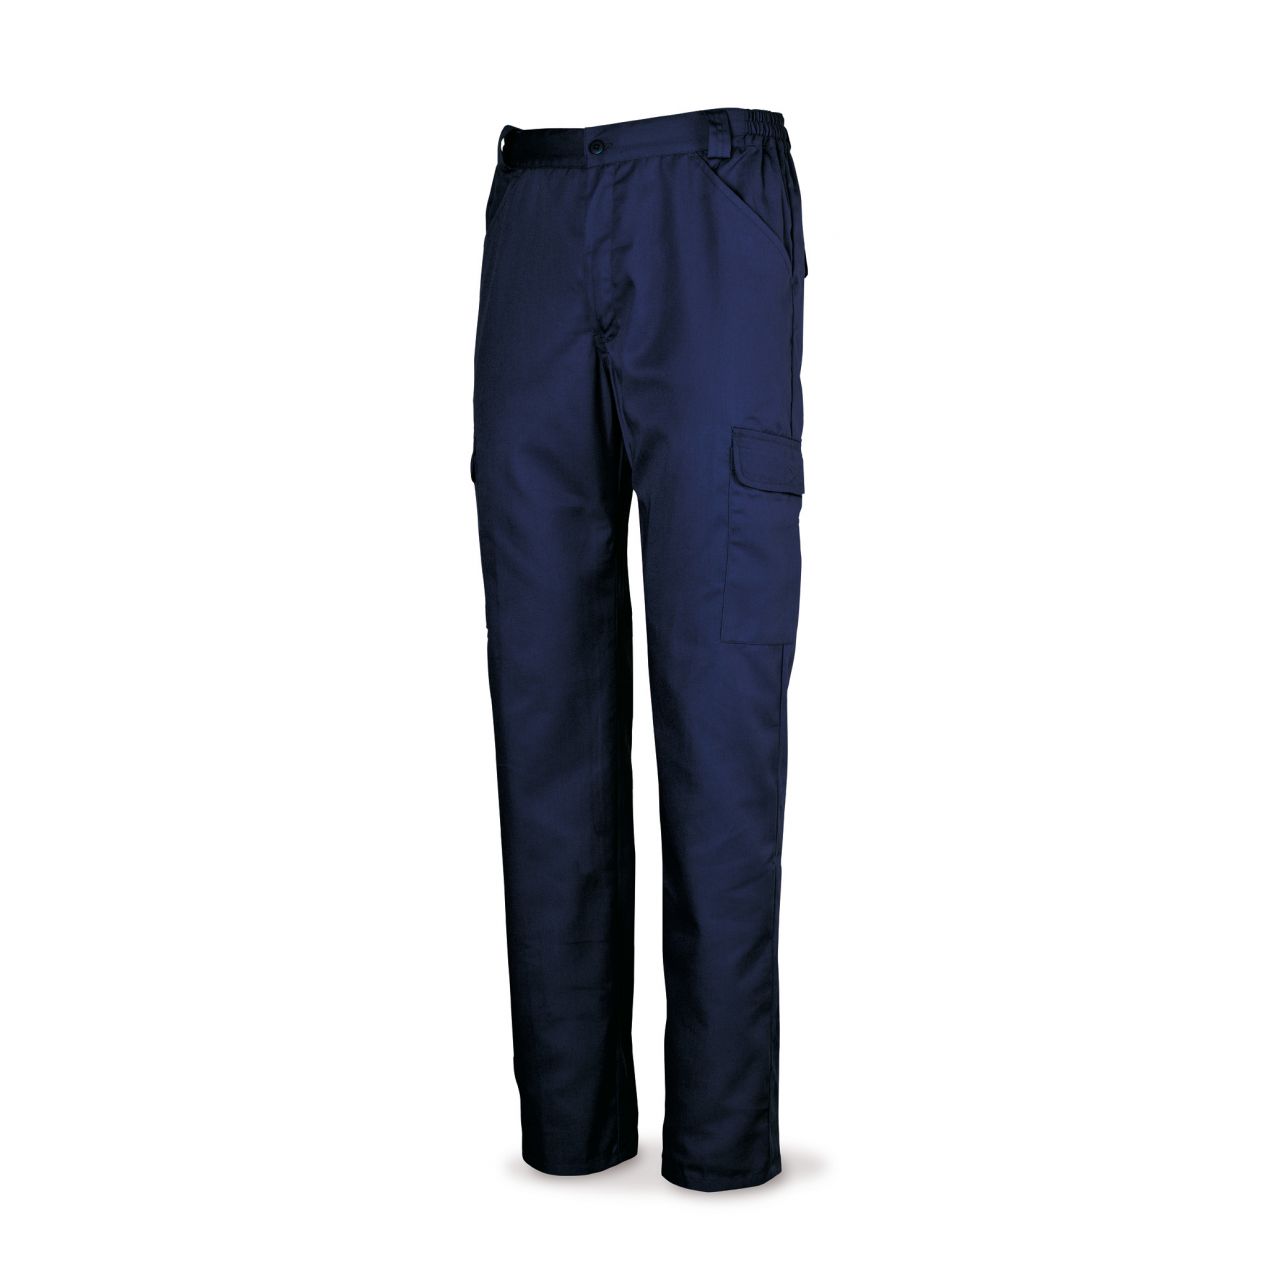 Pantalón azul marino algodón 200 g. Multibolsillos. 48